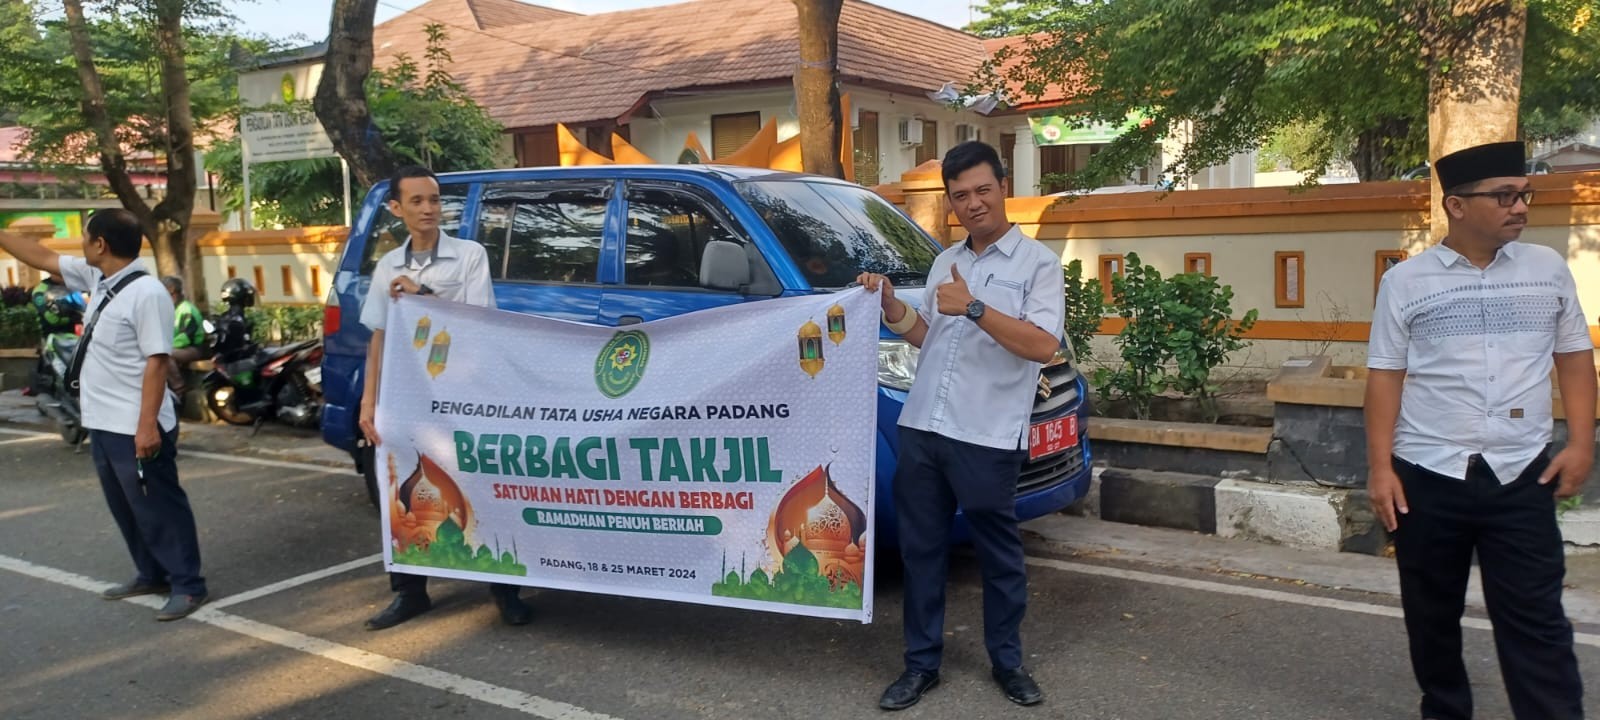 PTUN Padang melaksanakan Kegiatan Pembagian Takjil gratis